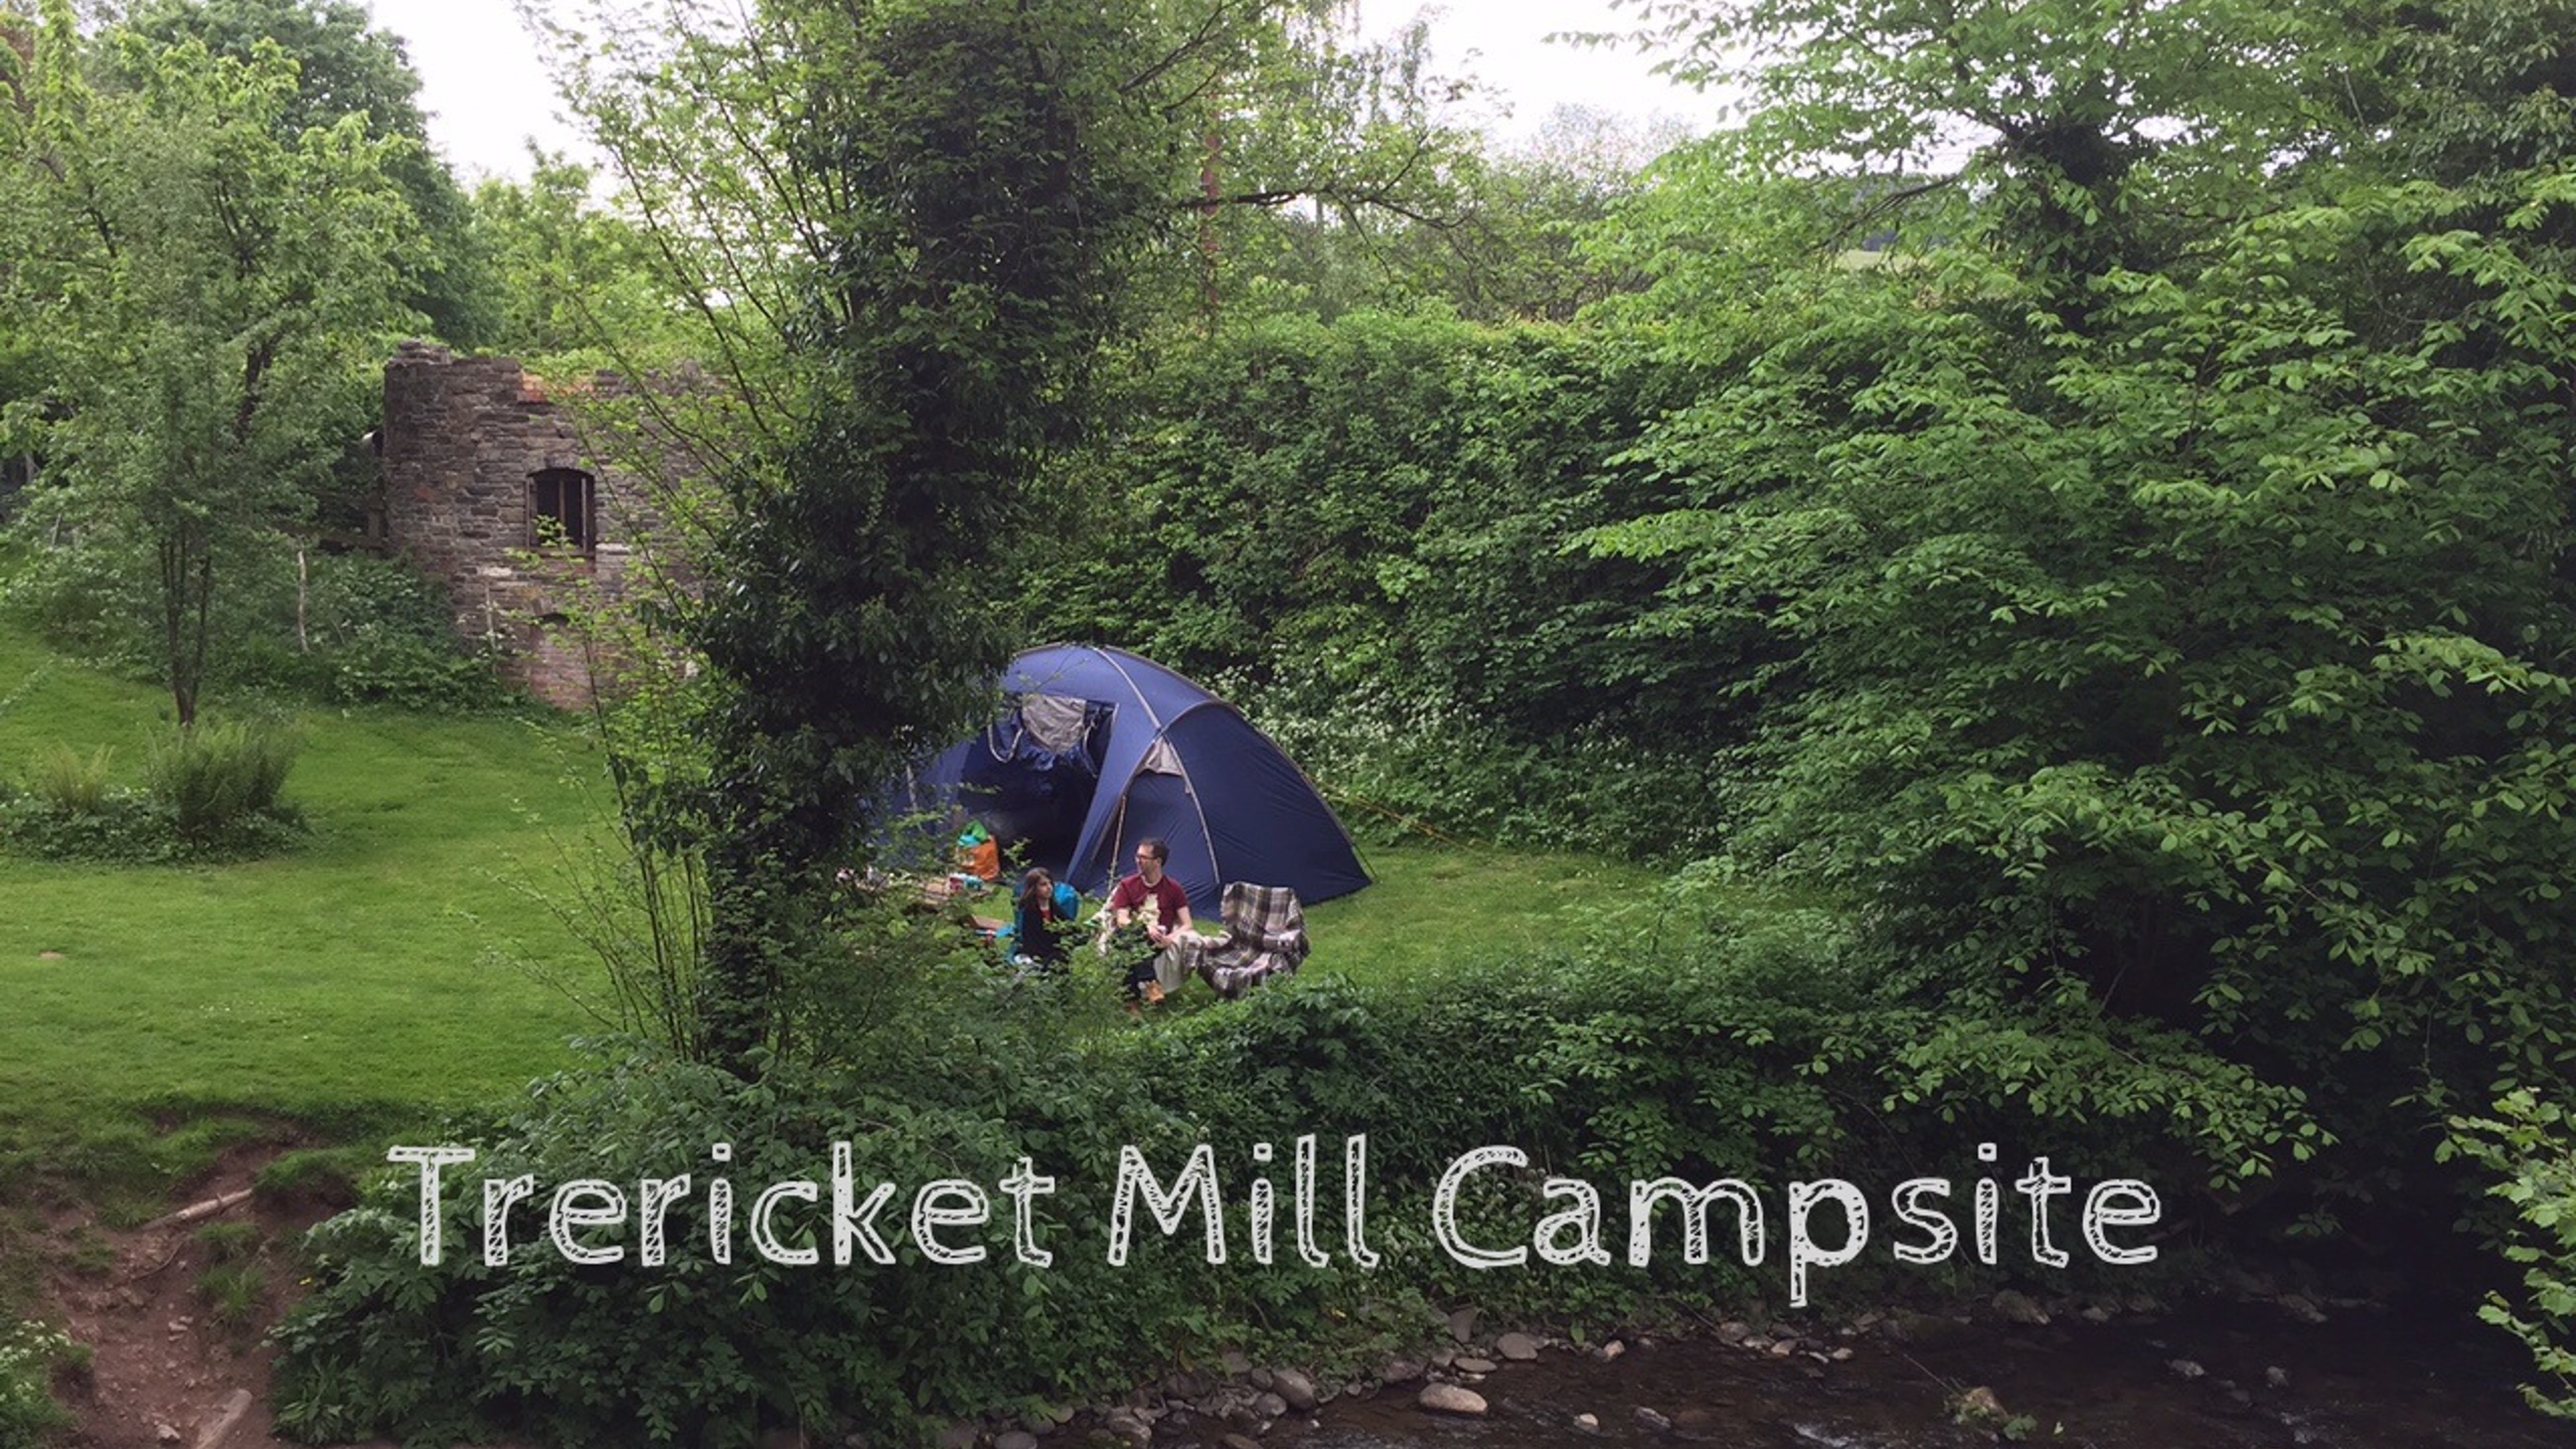 Trericket Mill Campsite / River Cabin Camping